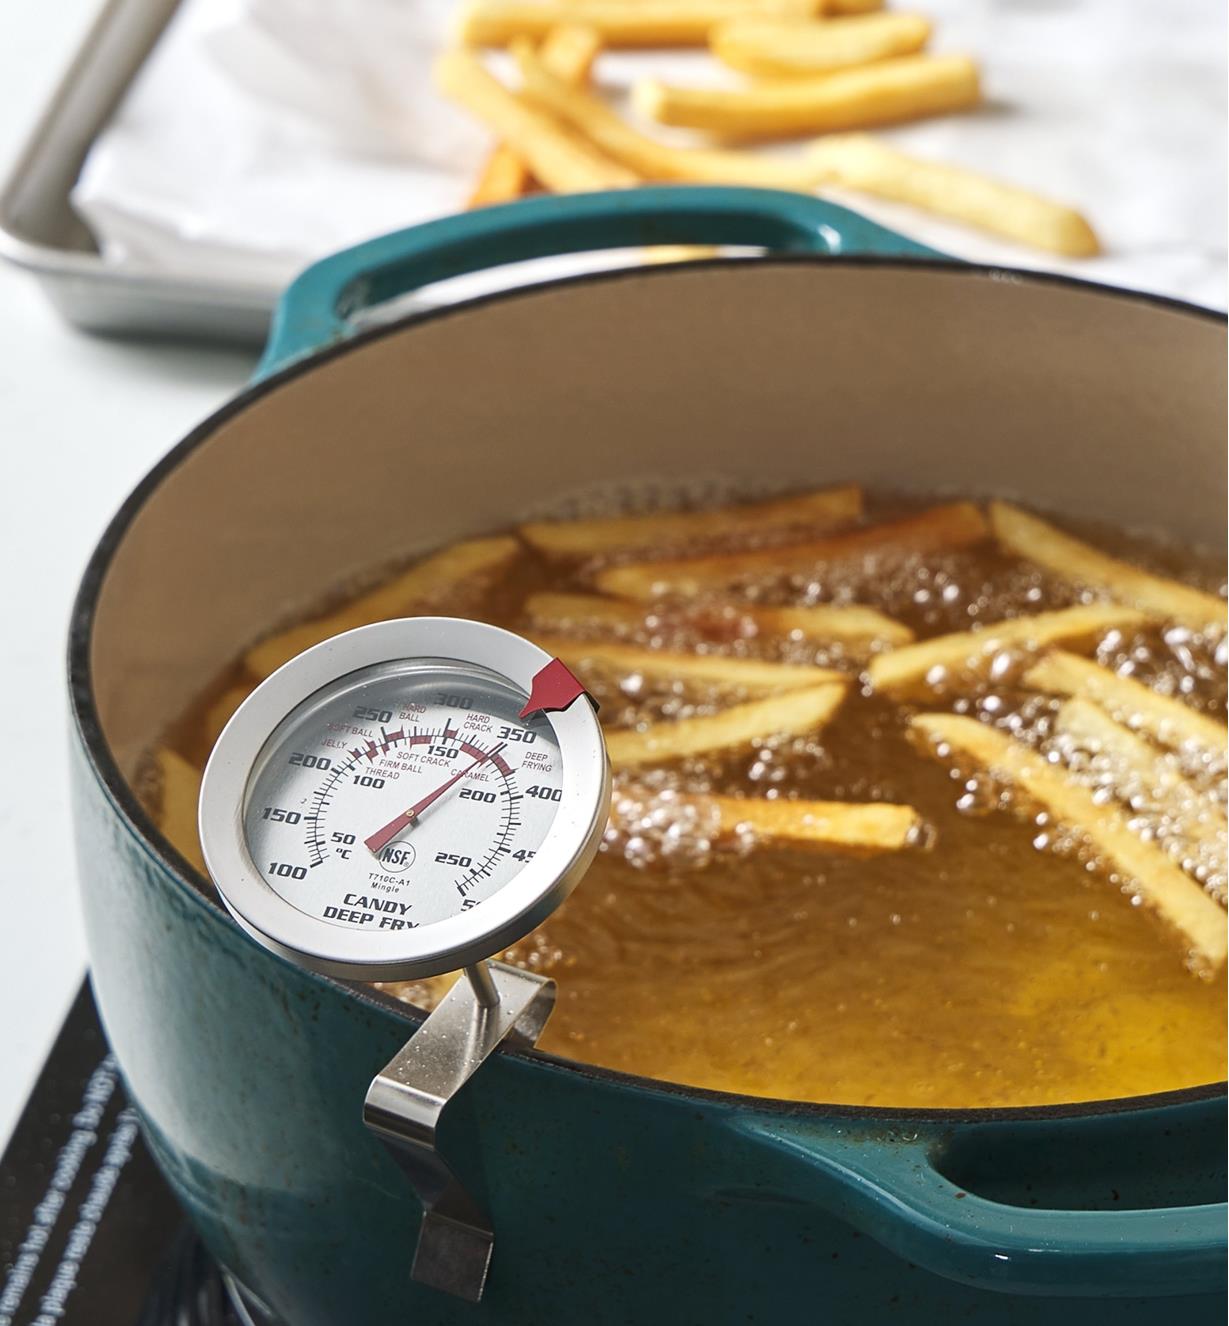 Thermomètre pour friture et confiserie accroché à une casserole où cuisent des frites